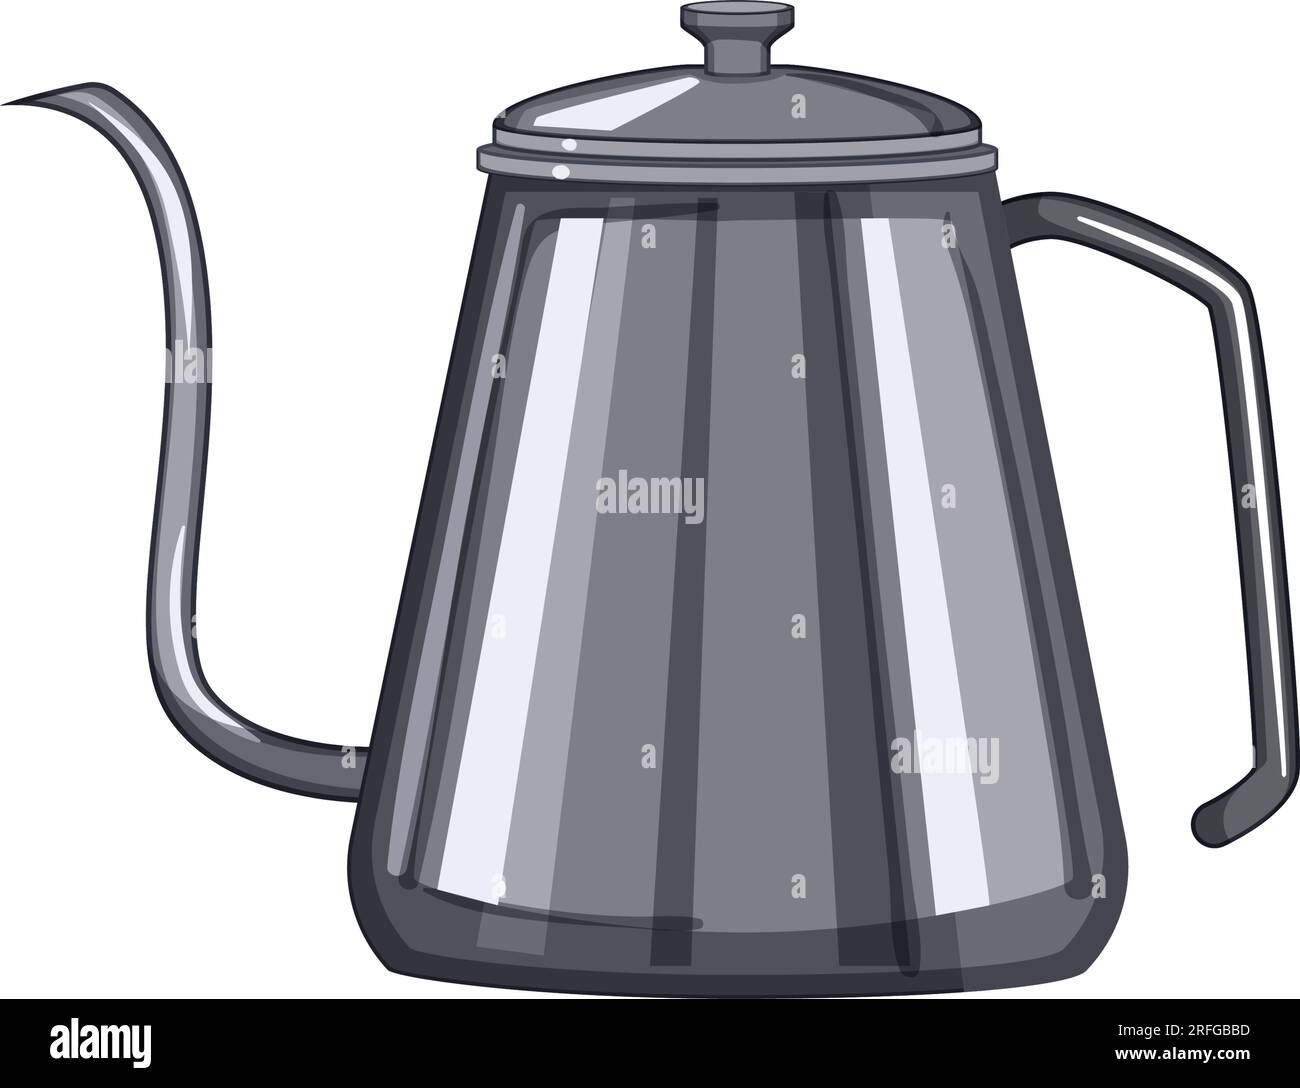 stainless steel drip kettle cartoon vector illustration Stock Vector